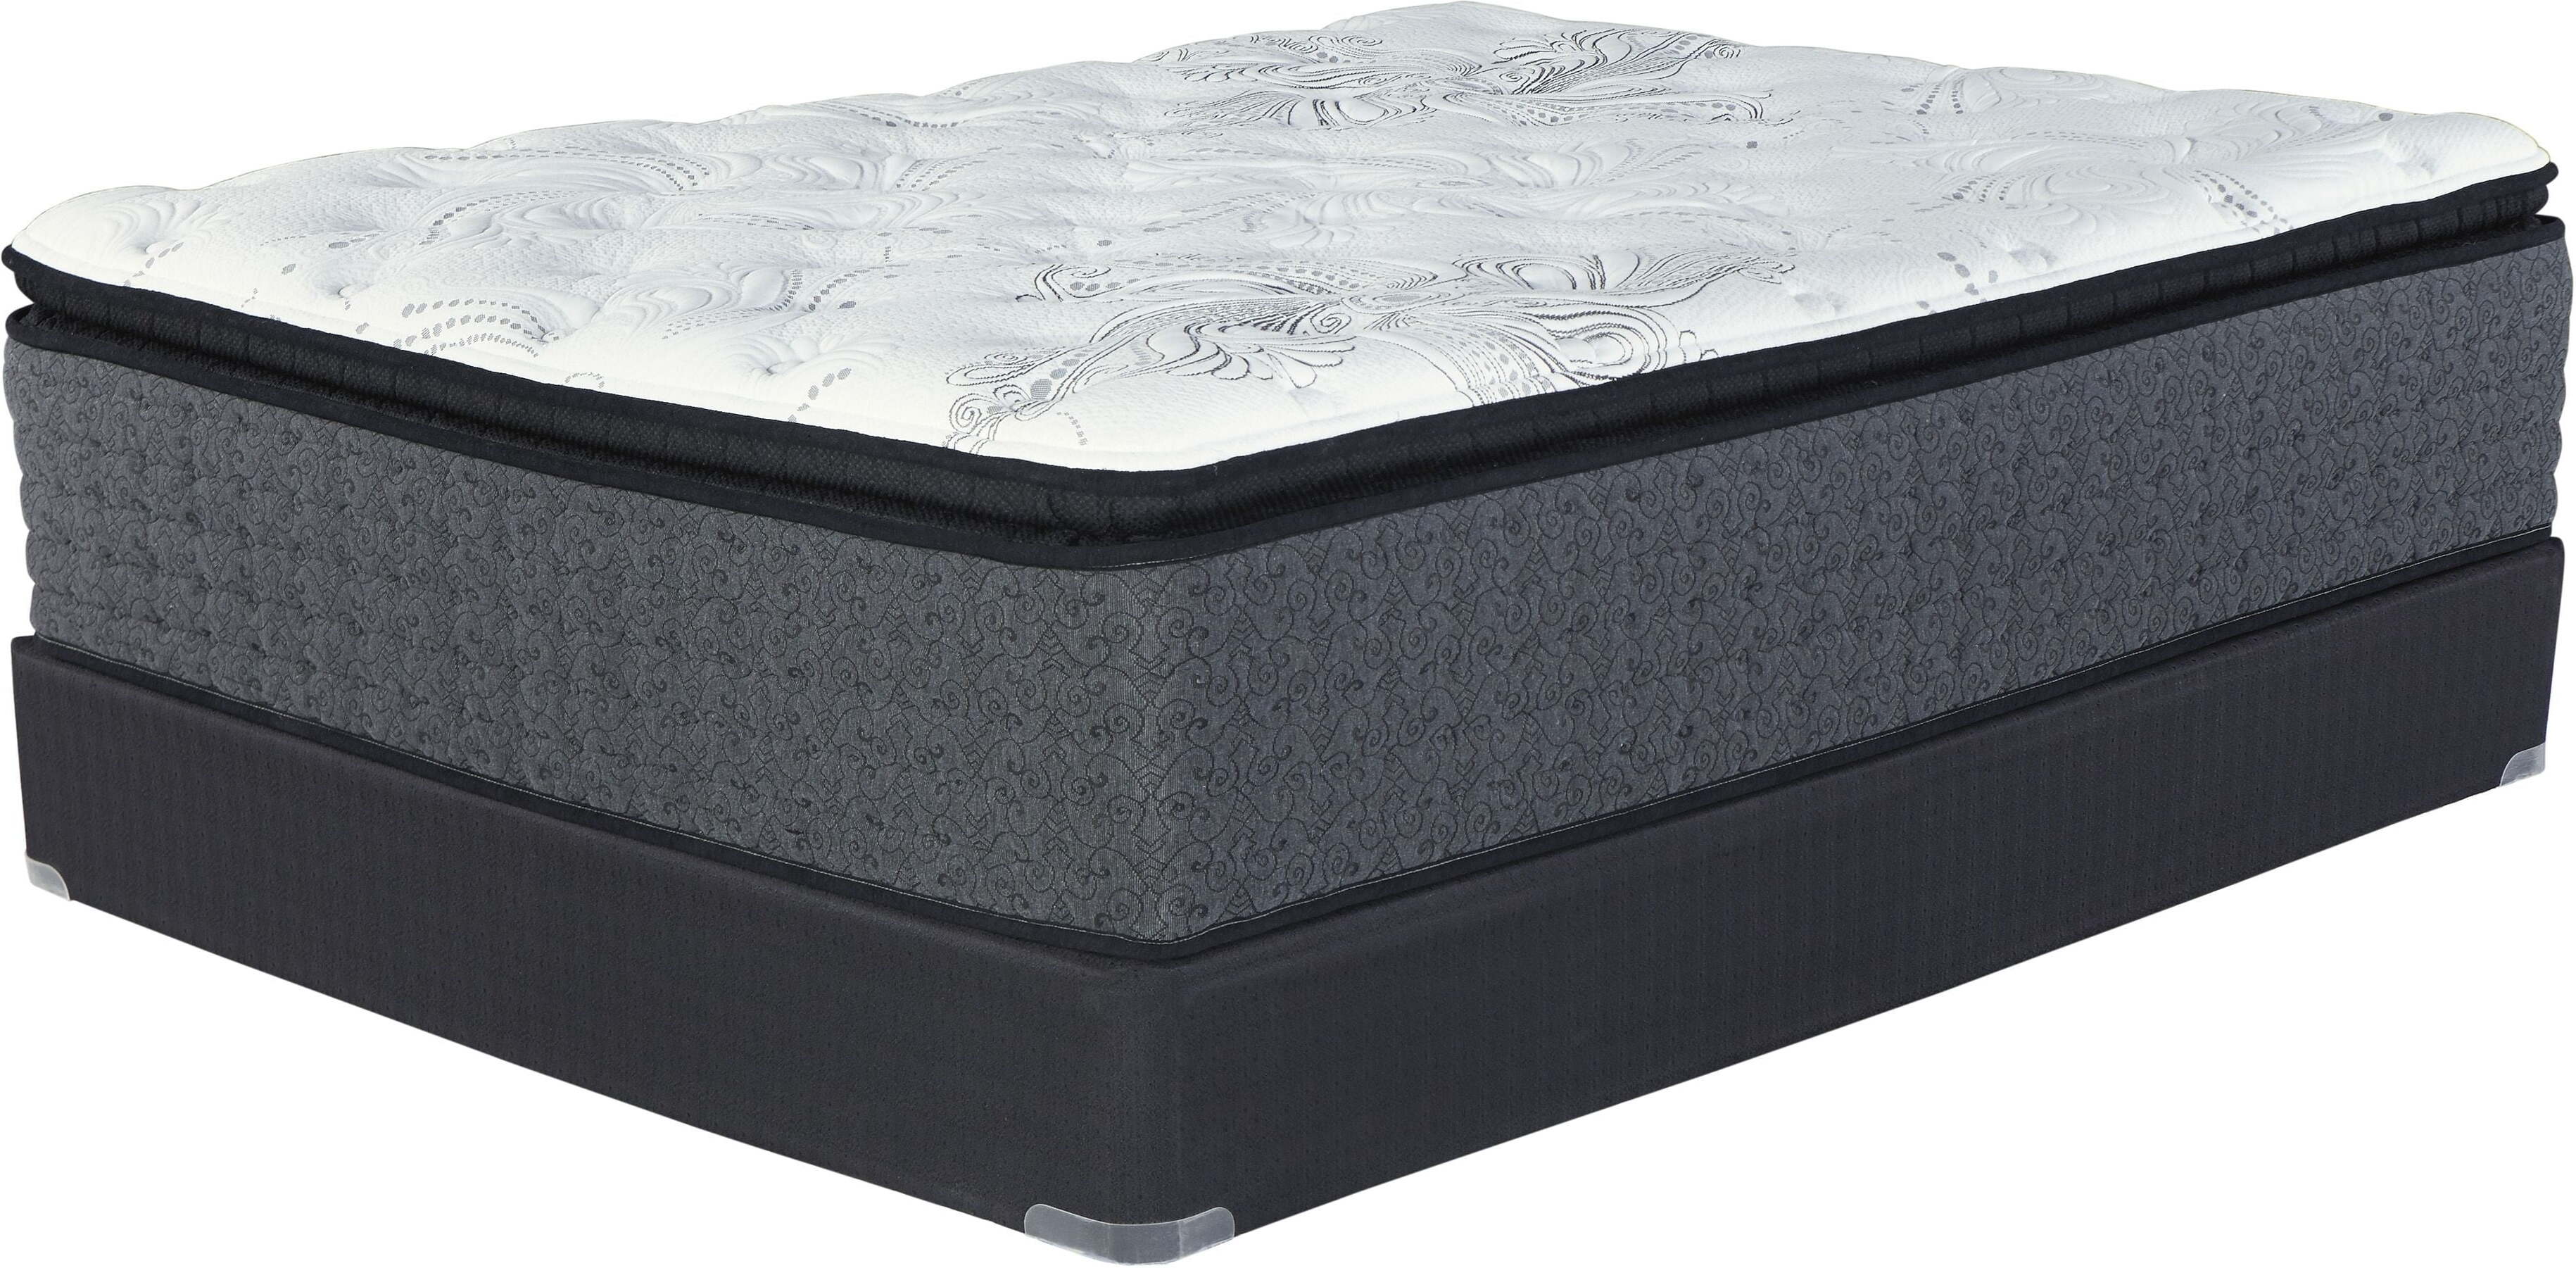 firm mattress with pillowtop